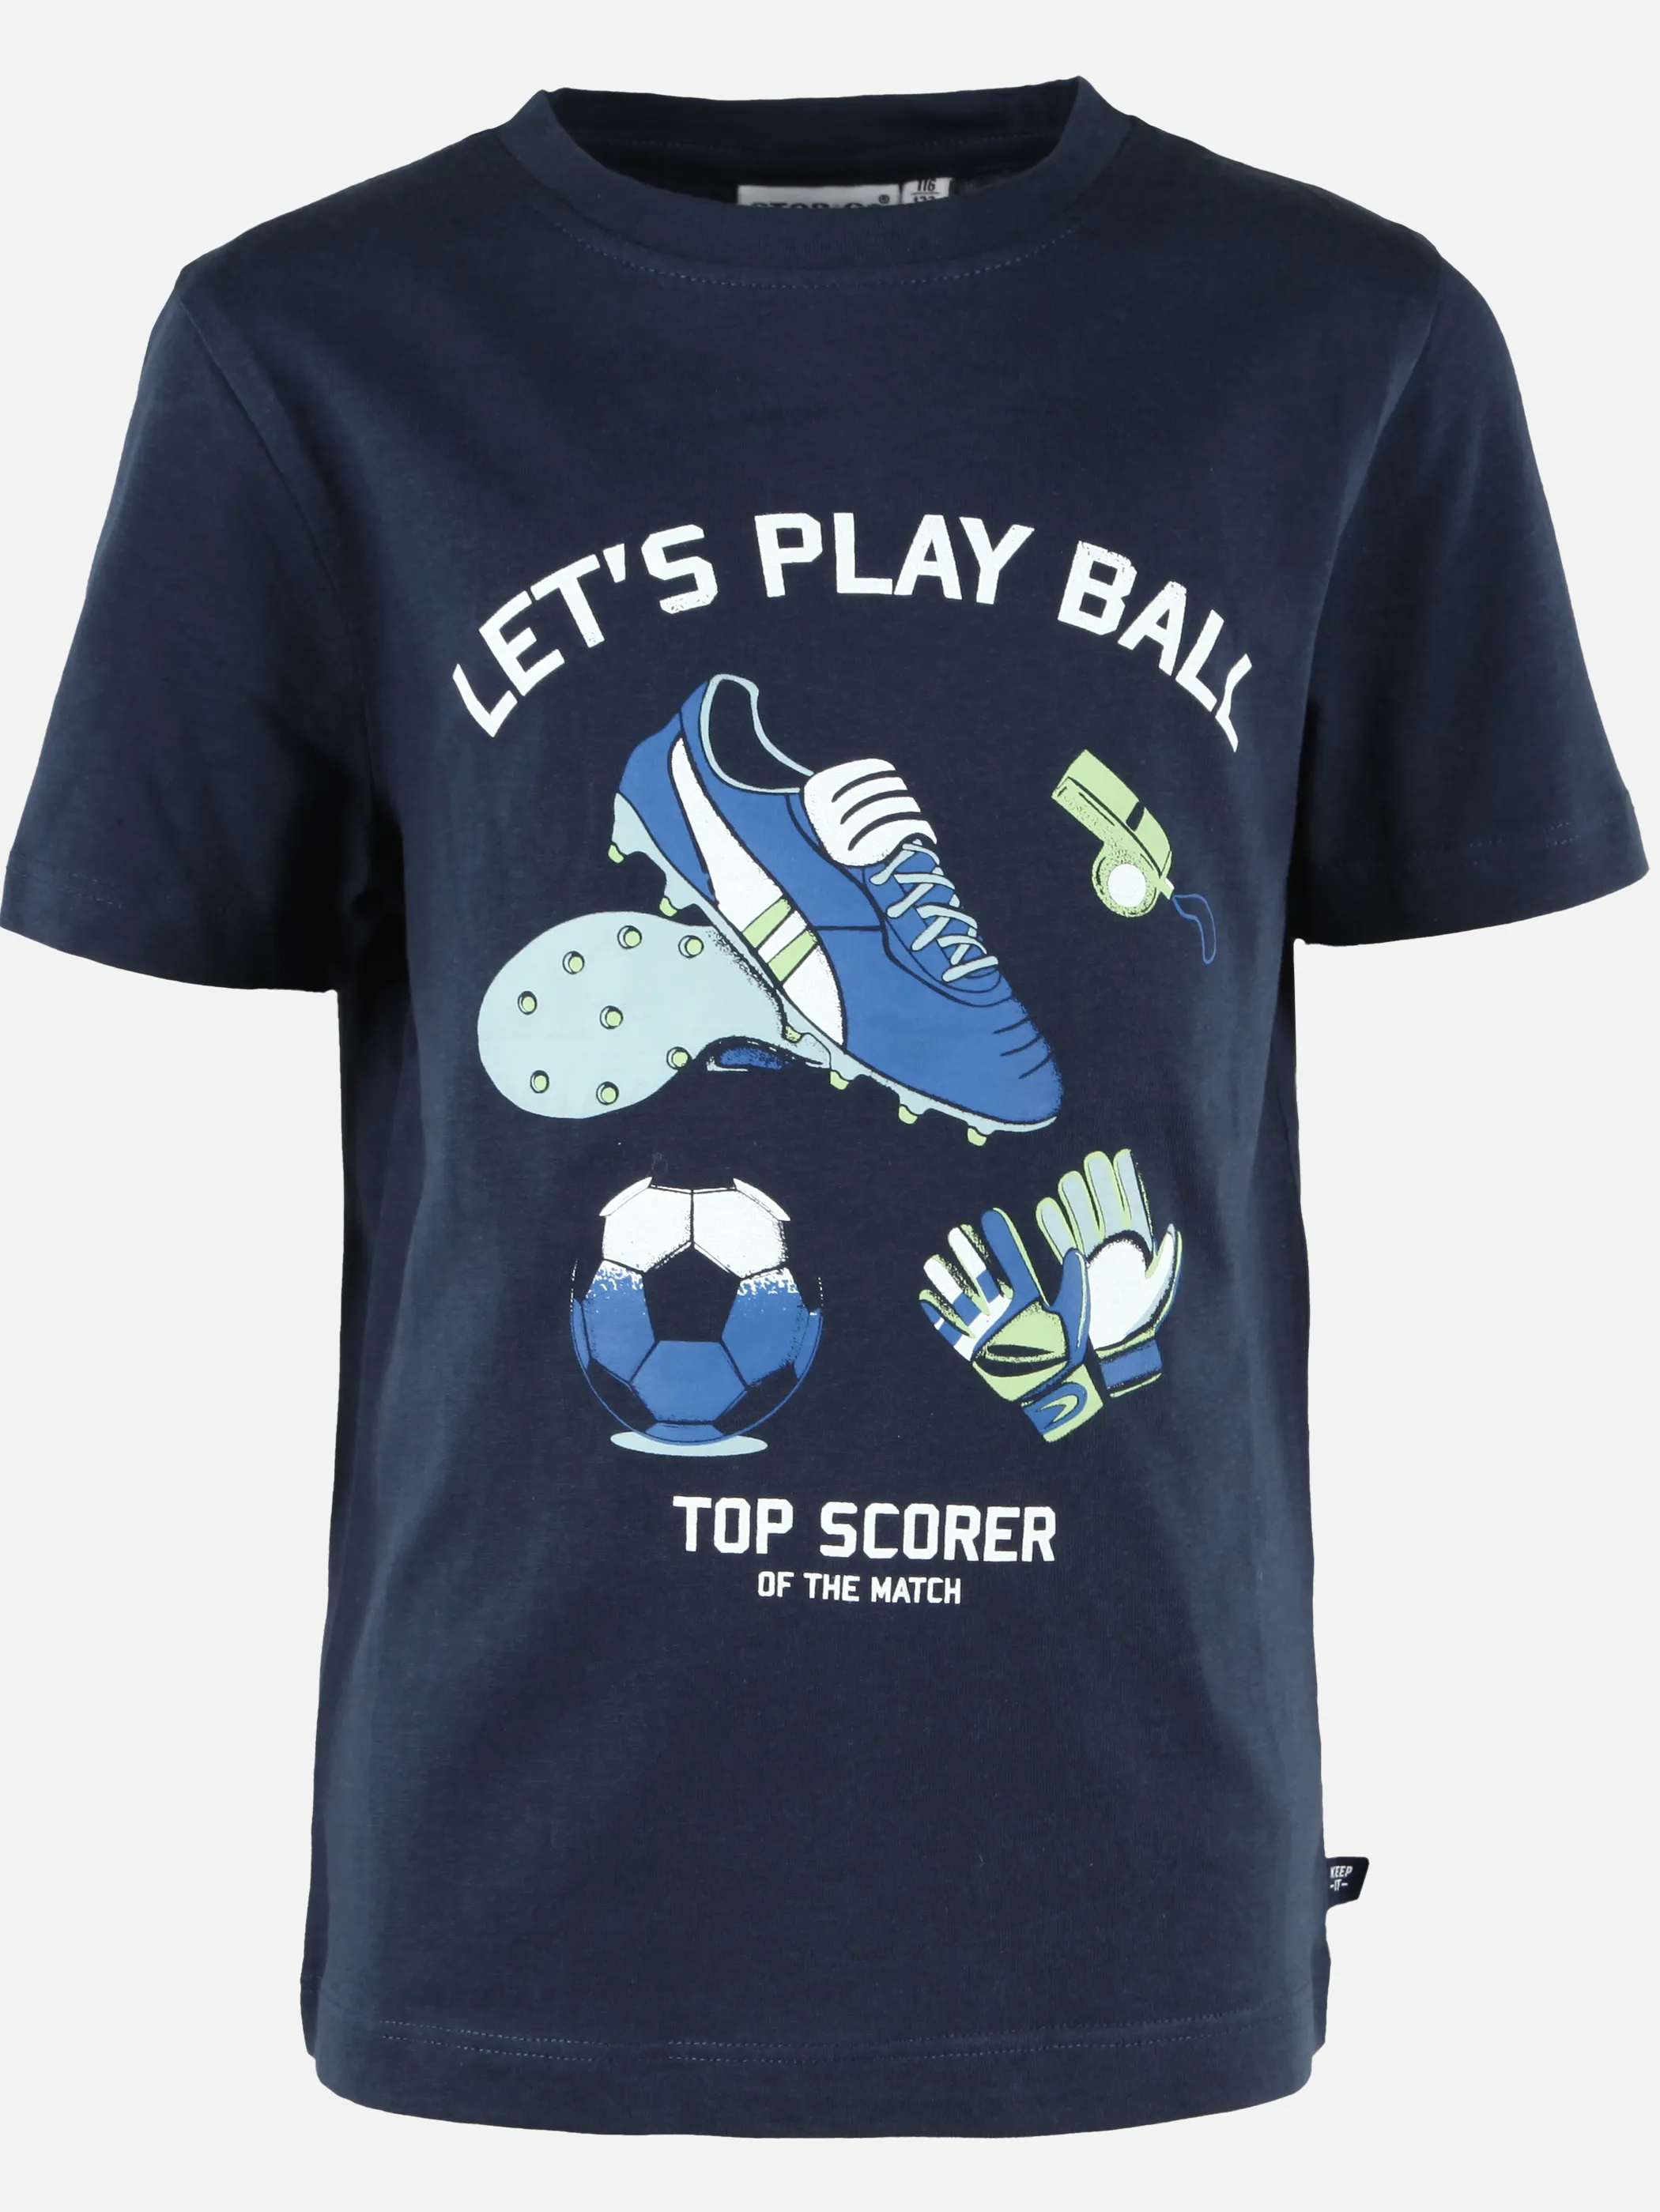 Stop + Go KJ T-Shirt mit Fußball Frontdruck in blau Blau 892782 BLAU 1